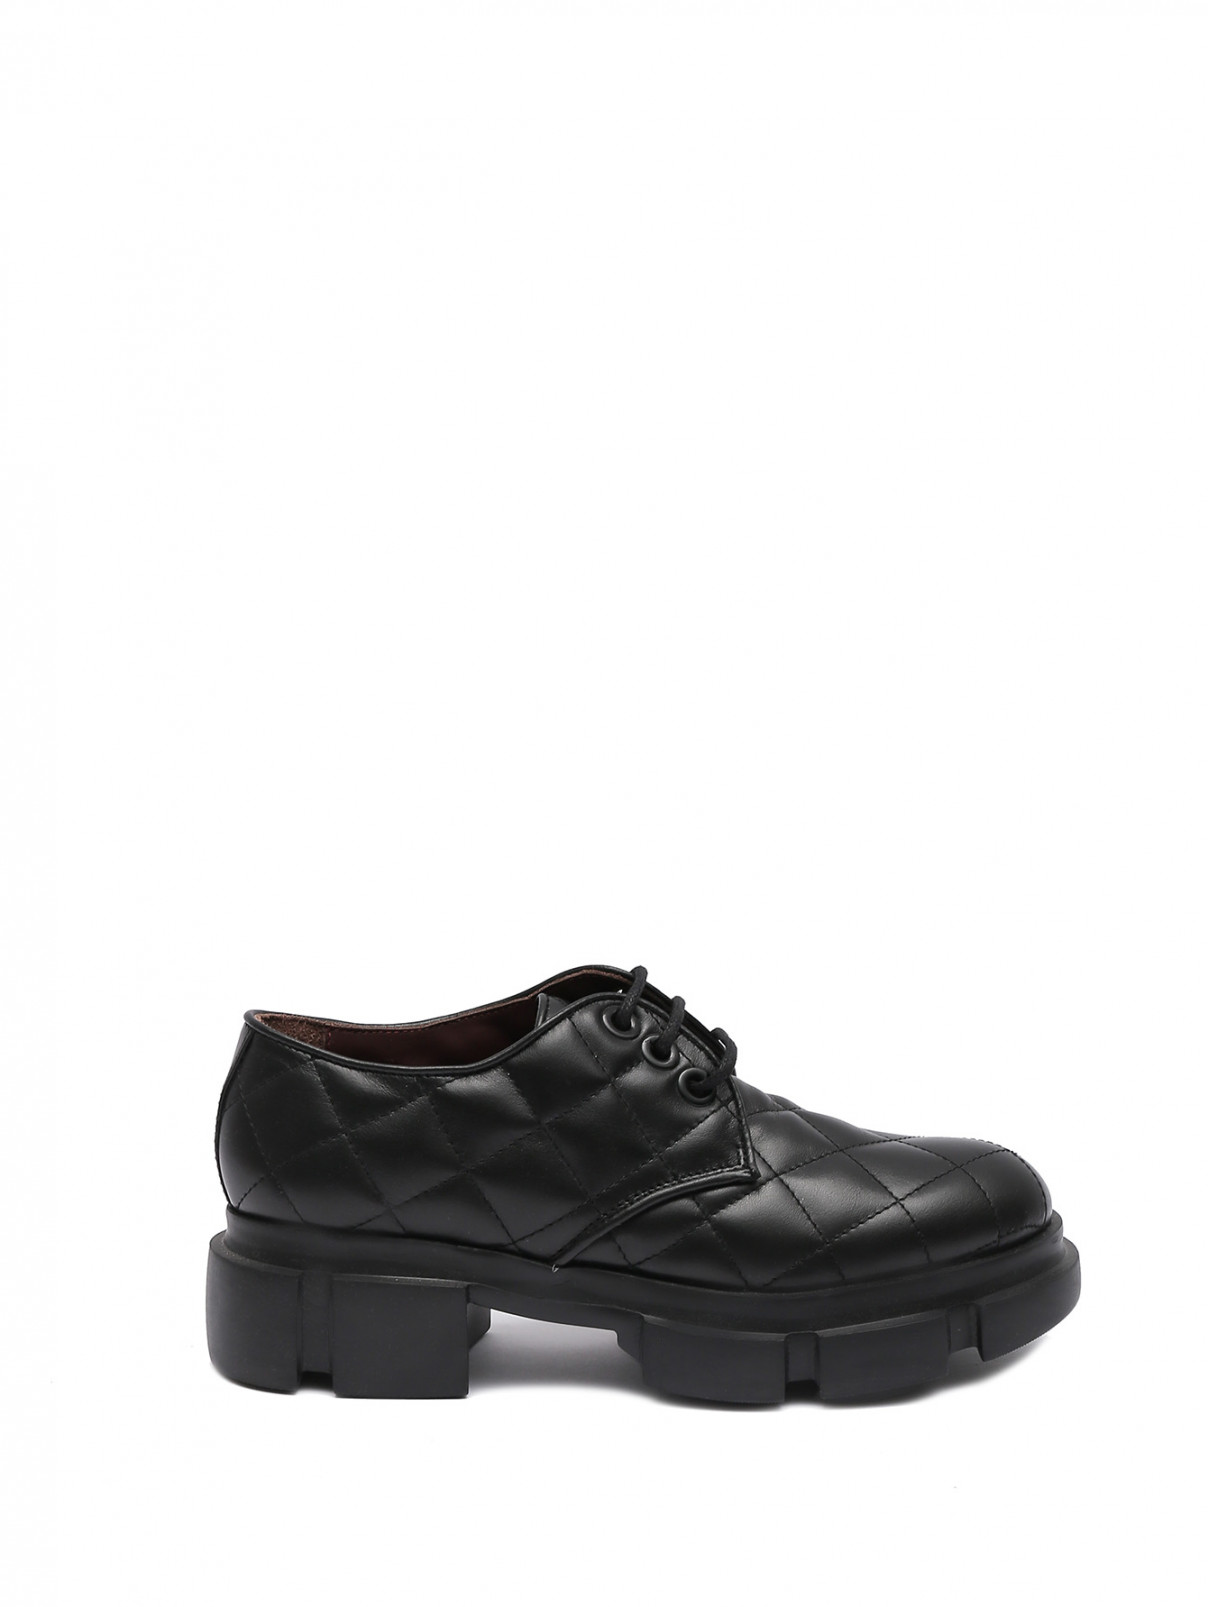 Стеганые ботинки из кожи Antonio Marras  –  Общий вид  – Цвет:  Черный